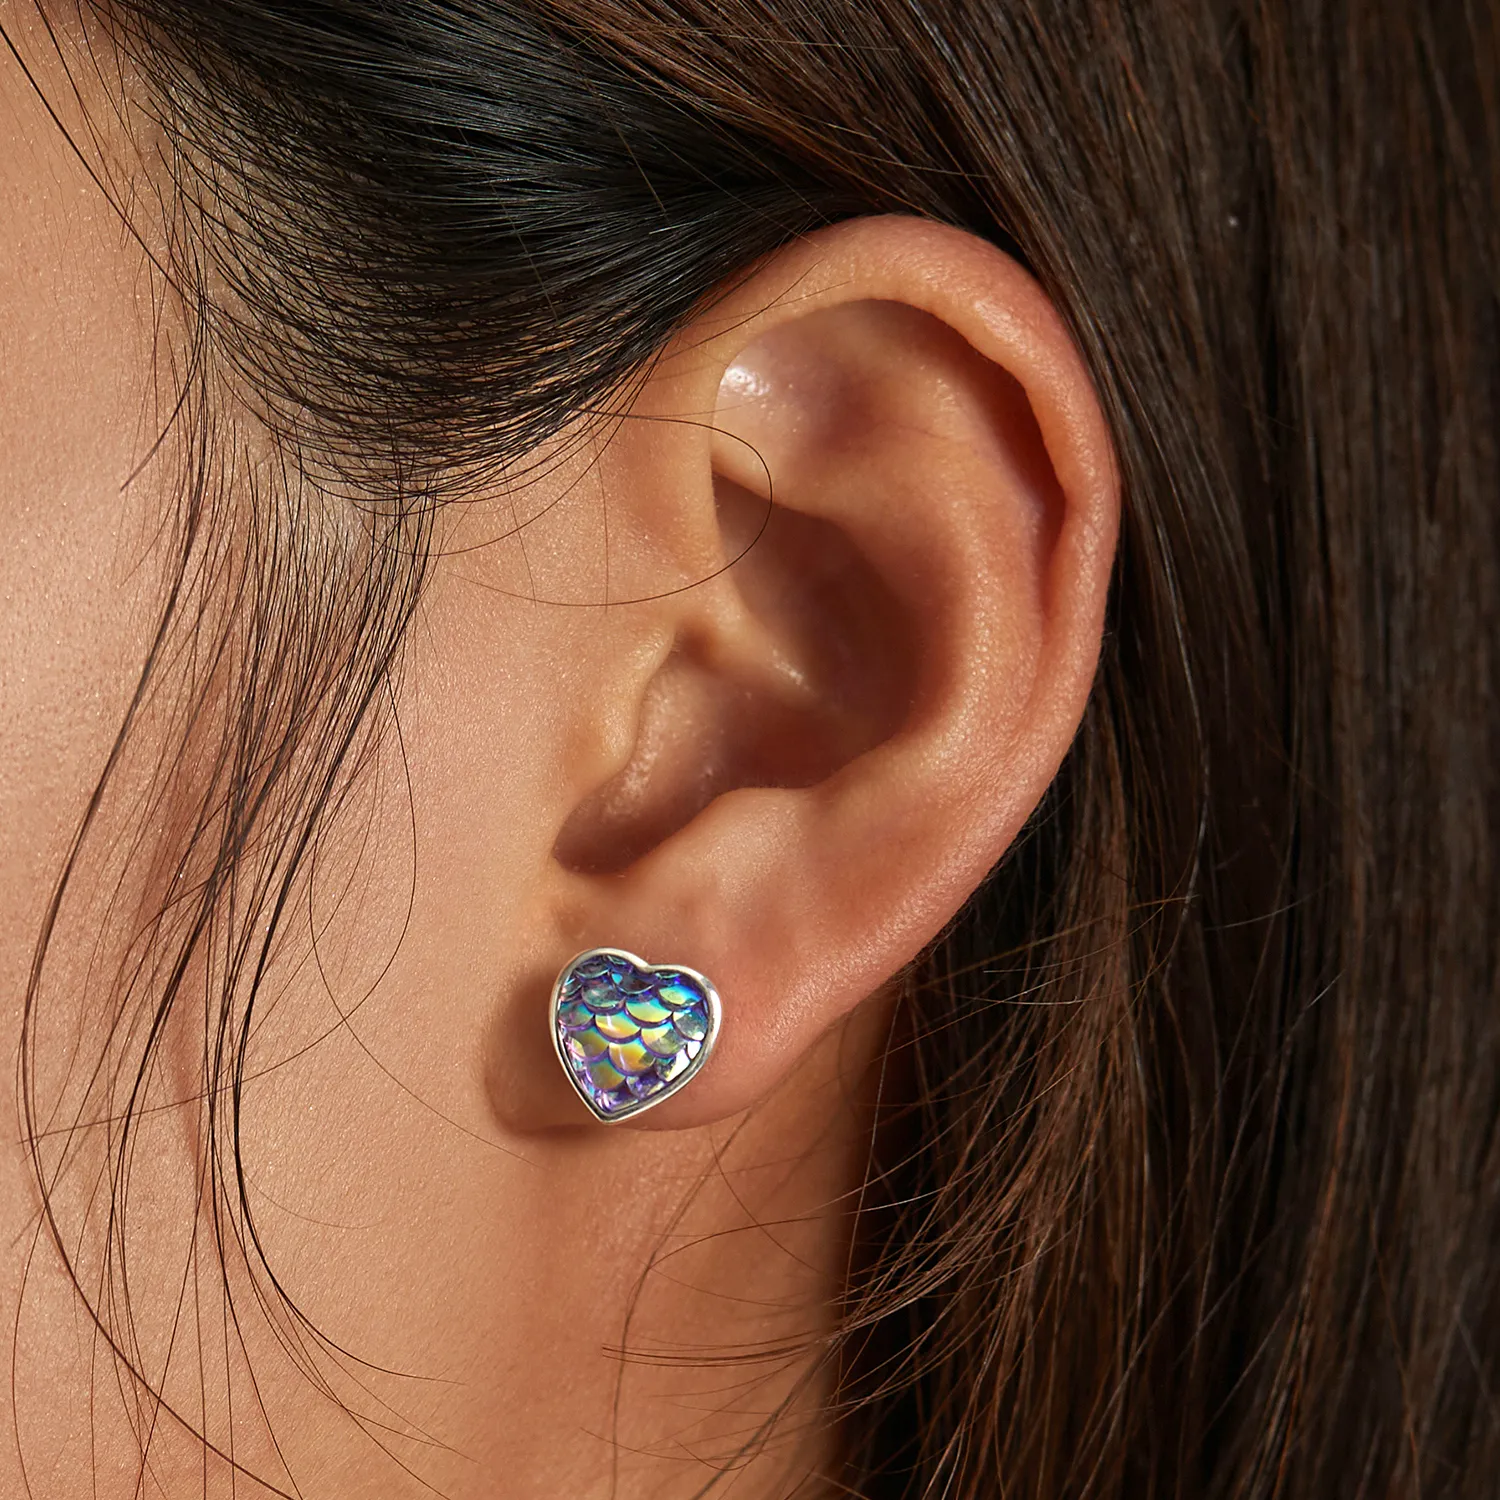 Studurile de ureche în stil Pandora cu inimă în formă de solzi de peşte - SCE1300